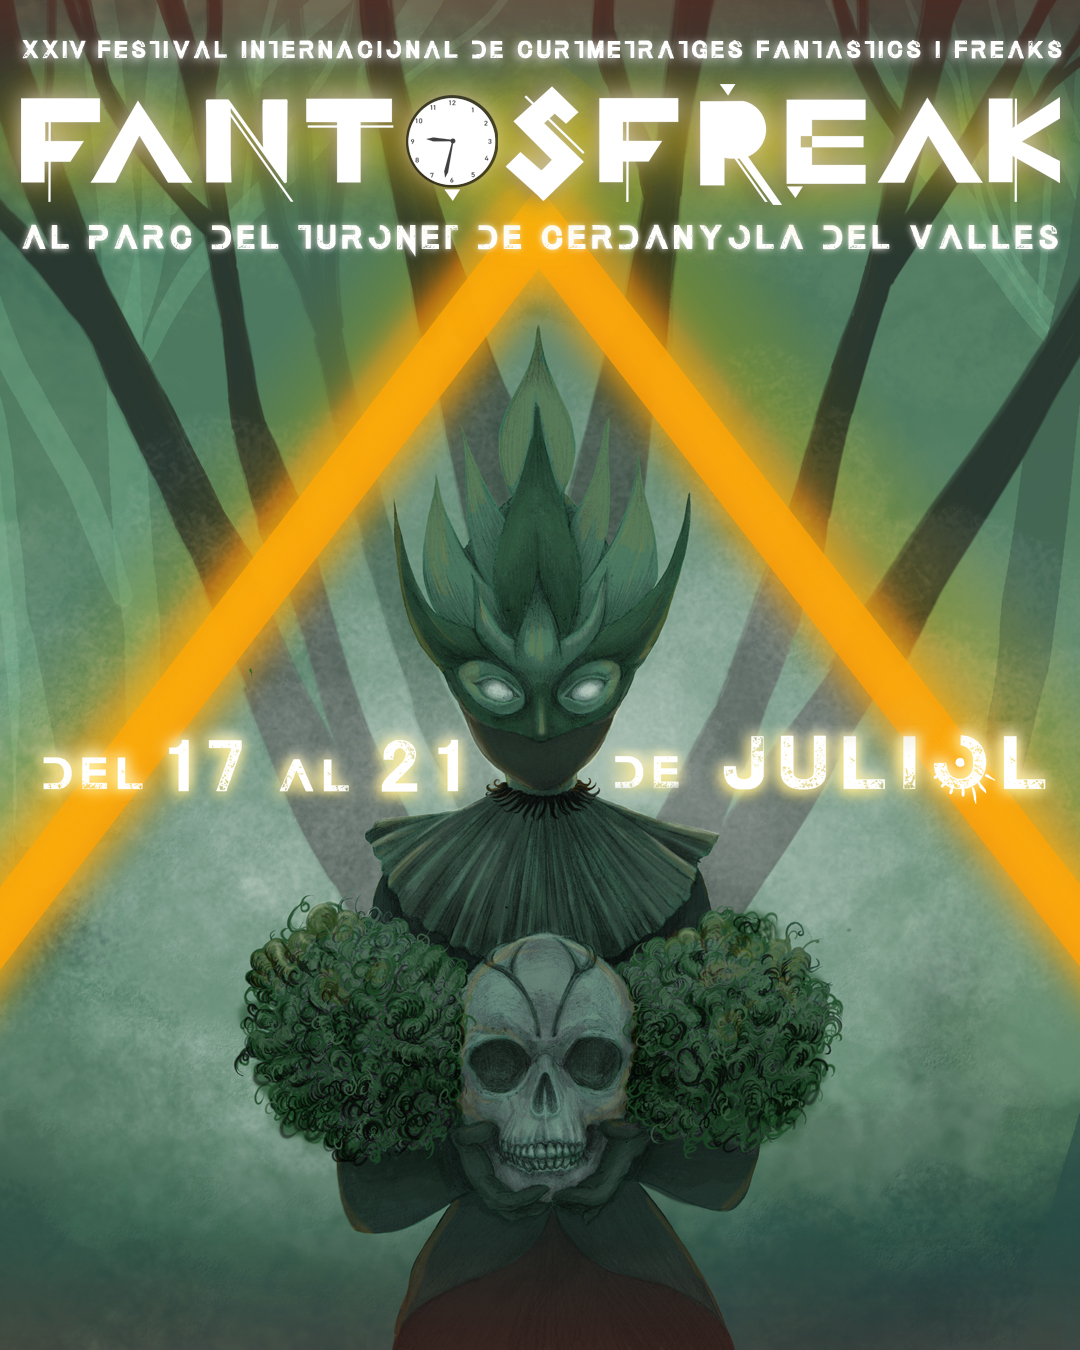 Imatge XXIV Fantosfreak. Festival Internacional de Curtmetratges Fantàstics i Freaks 